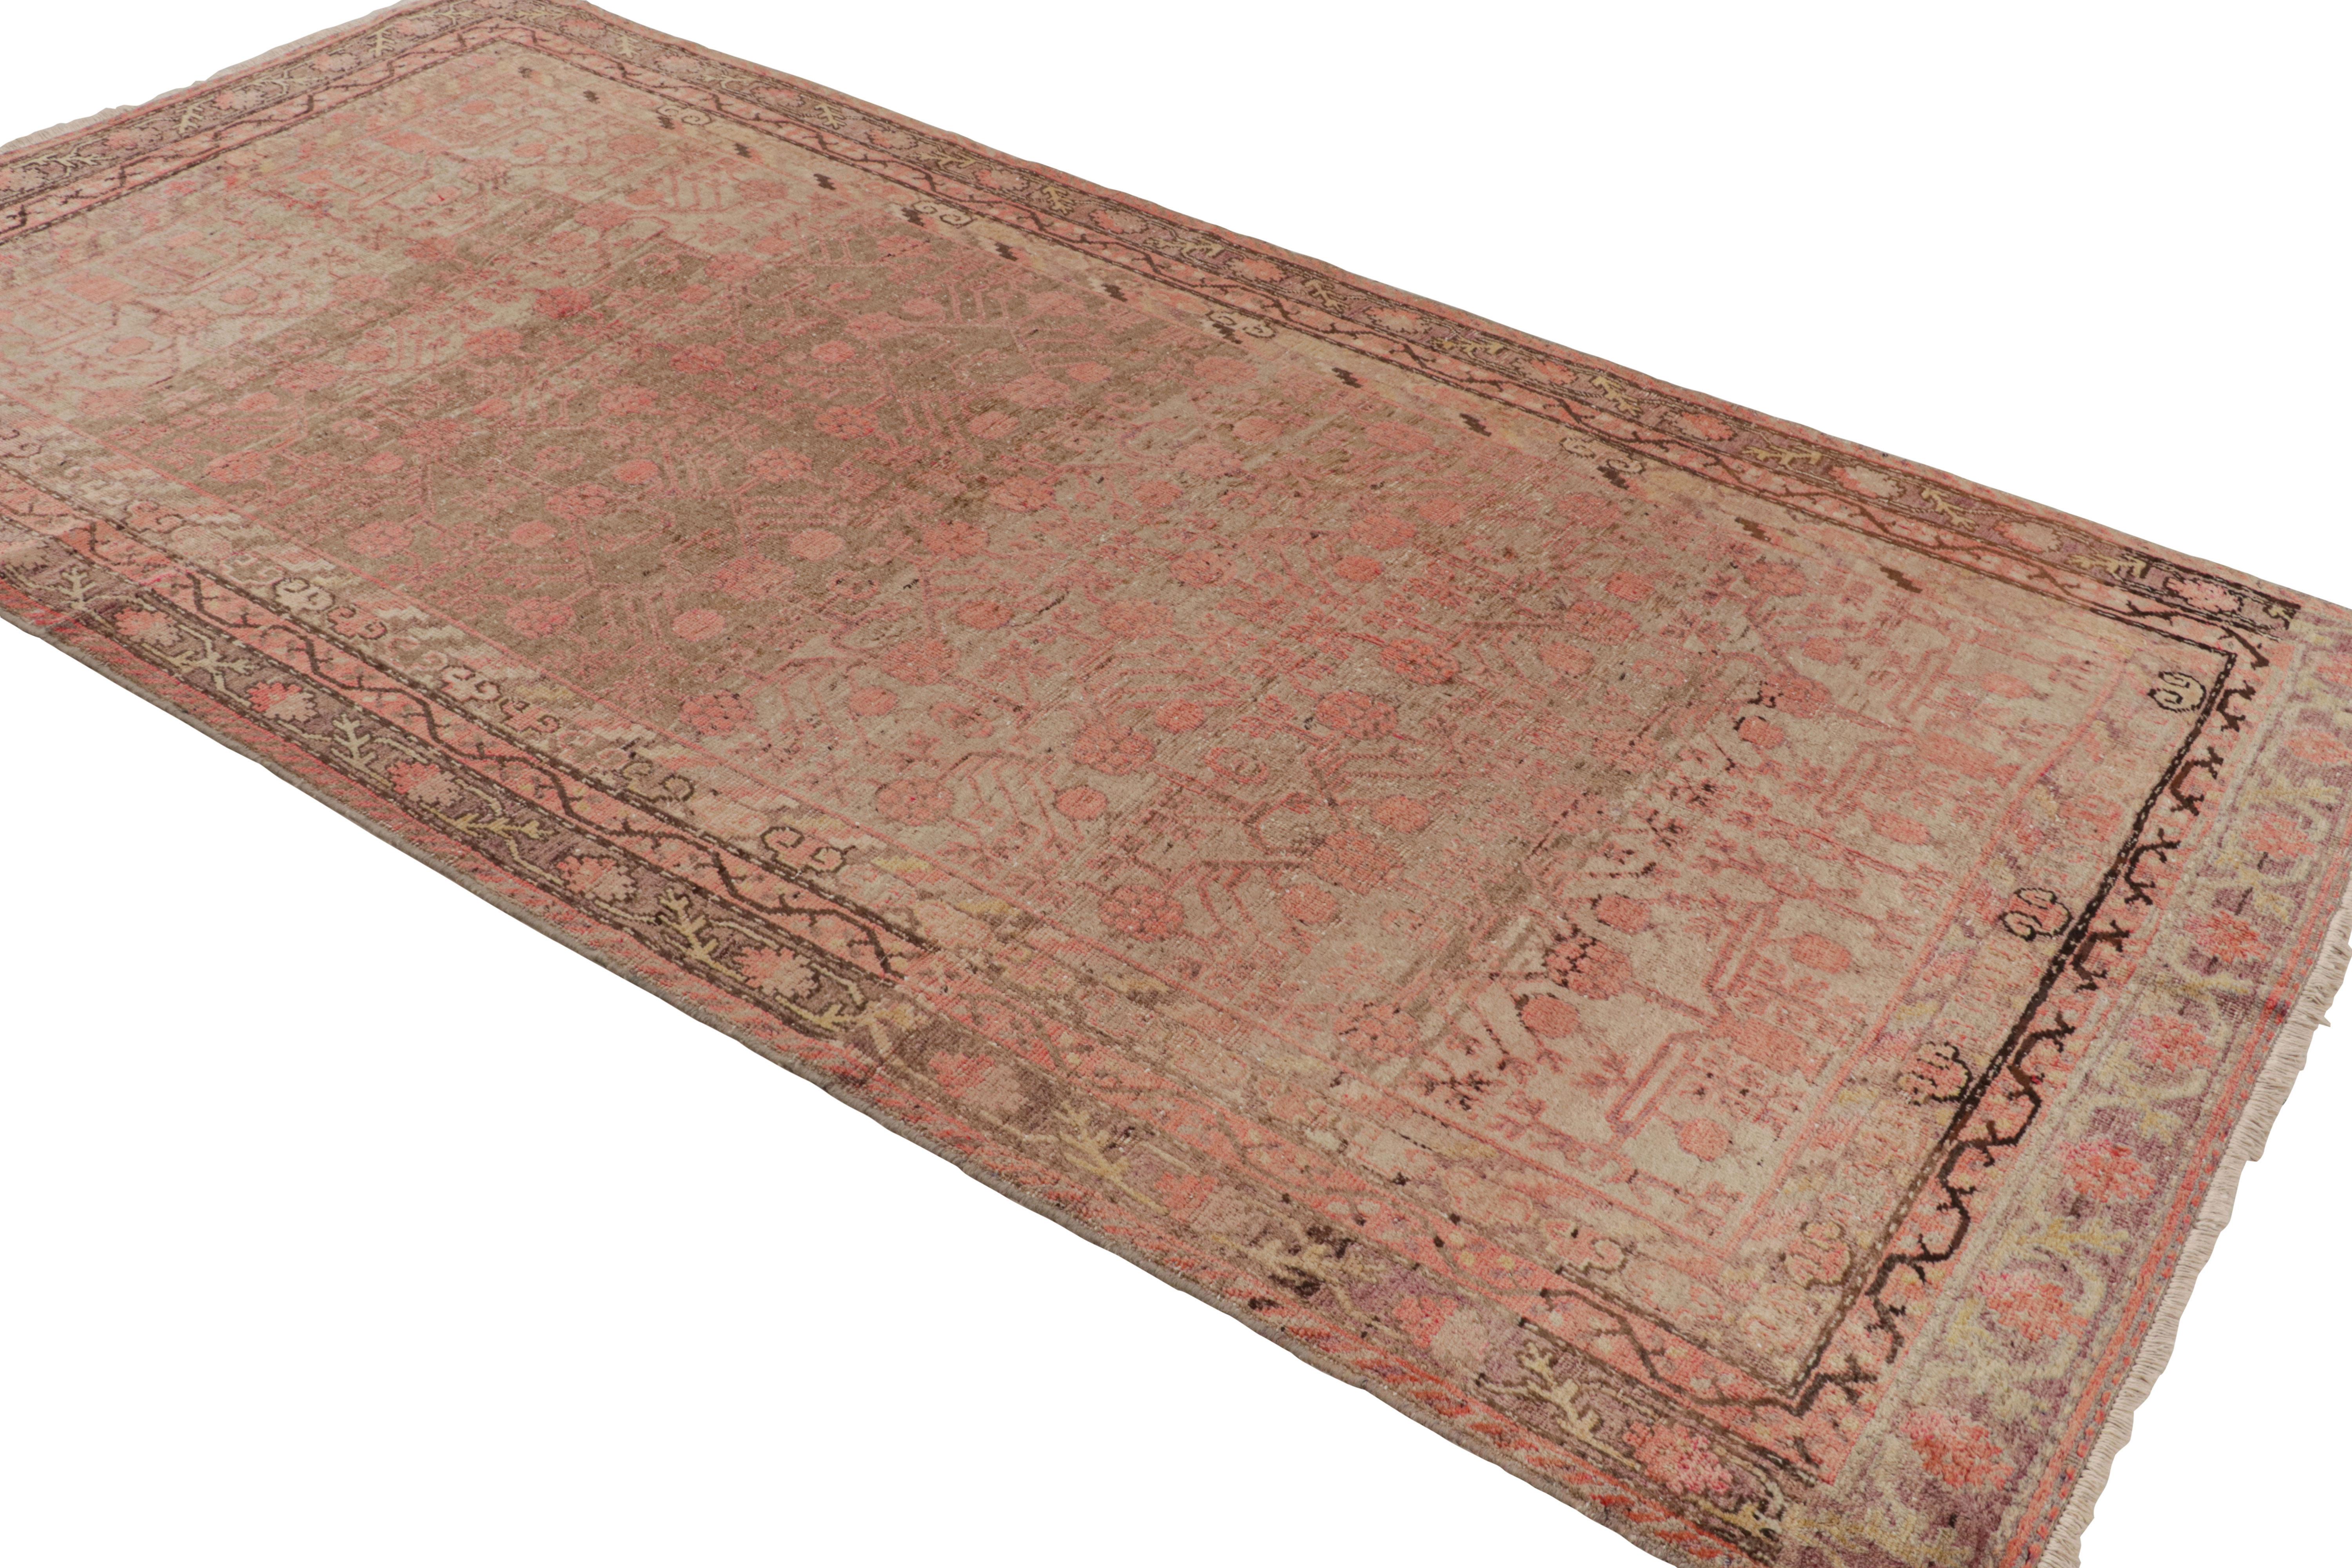 Originaire du Turkestan oriental en (année), ce tapis Khotan transitionnel du milieu du siècle de Rug & Kilim présente un motif de champs finement tissé et inhabituellement répétitif. Tissé à la main dans une laine de haute qualité, un contraste